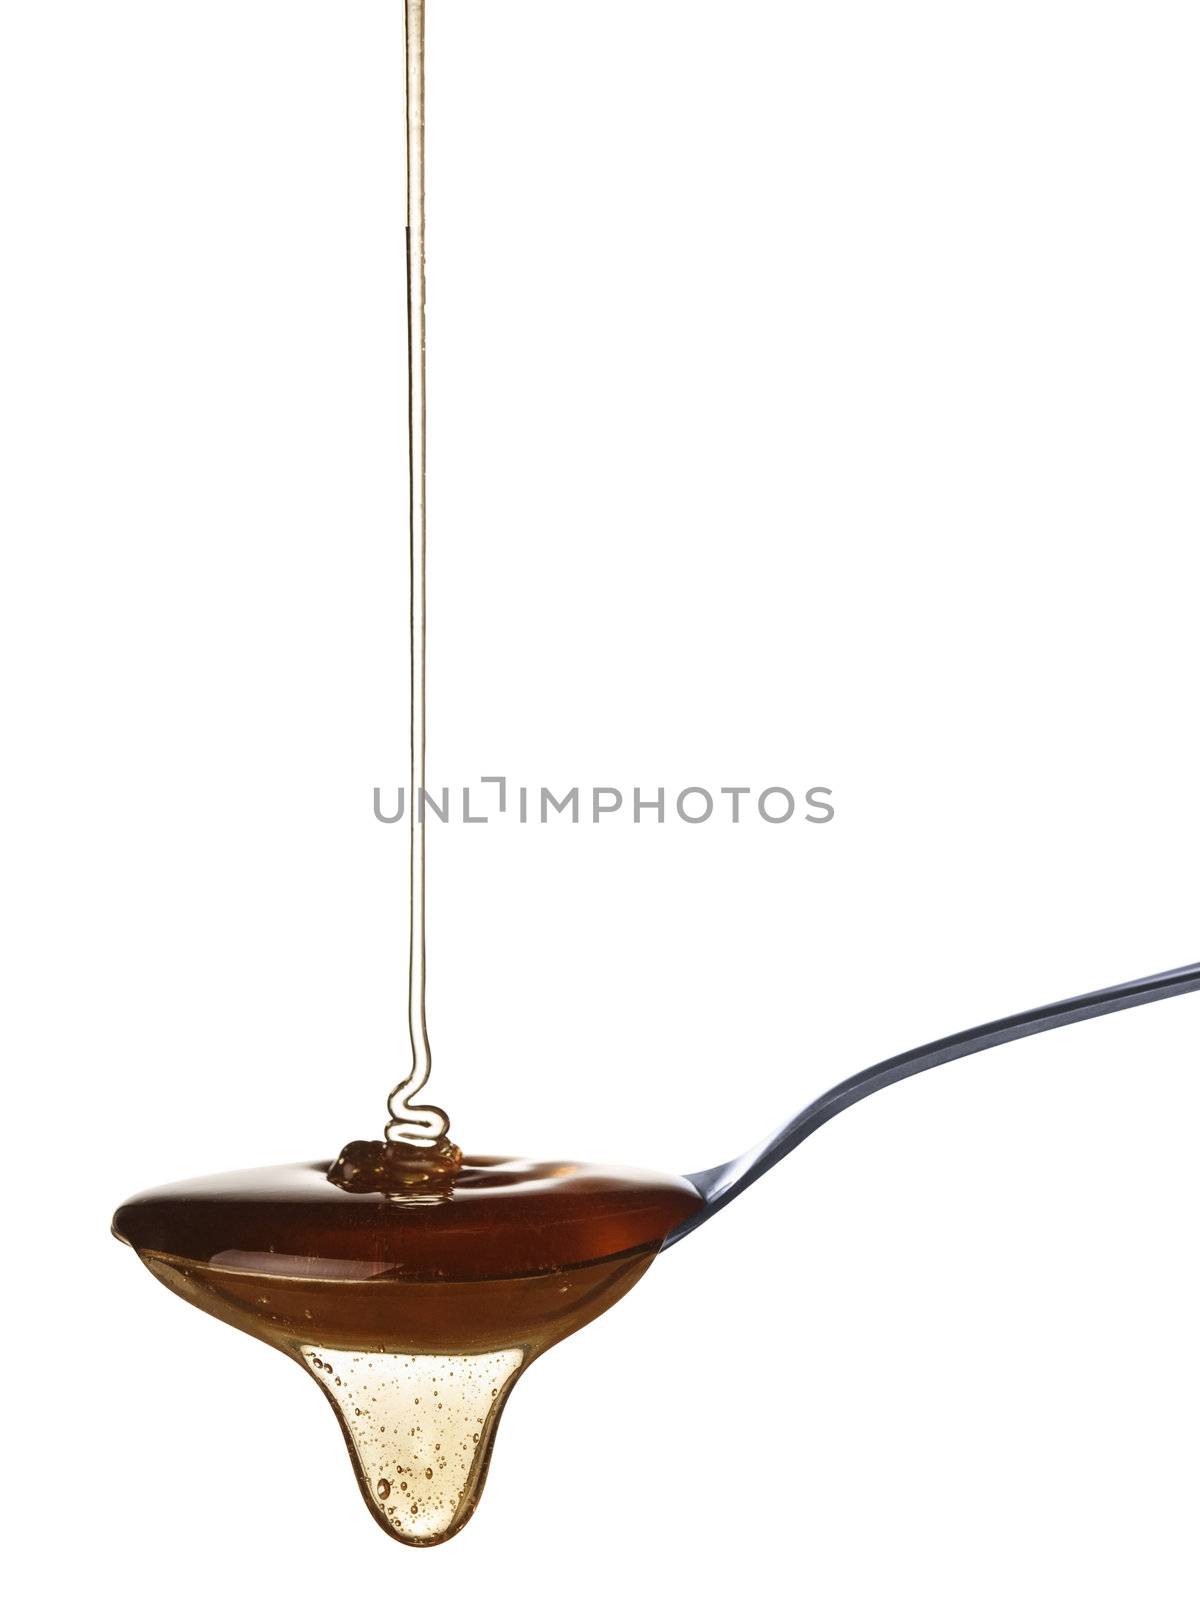 The honey slowly falls onto the spoon.